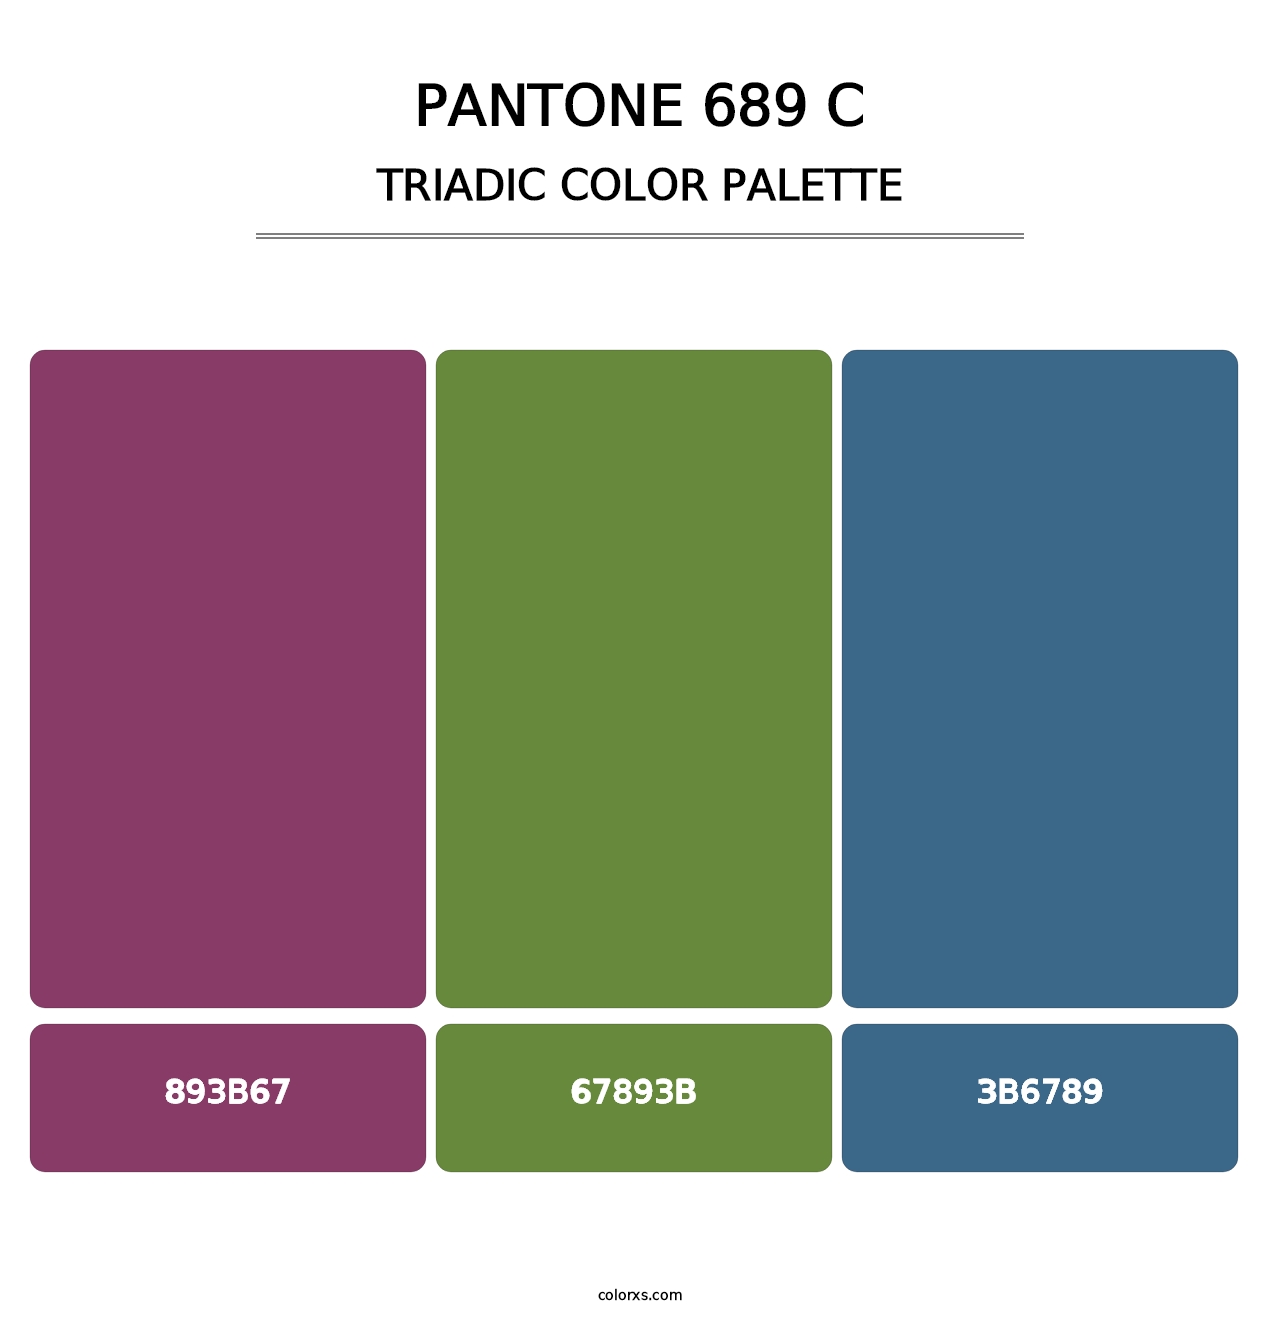 PANTONE 689 C - Triadic Color Palette